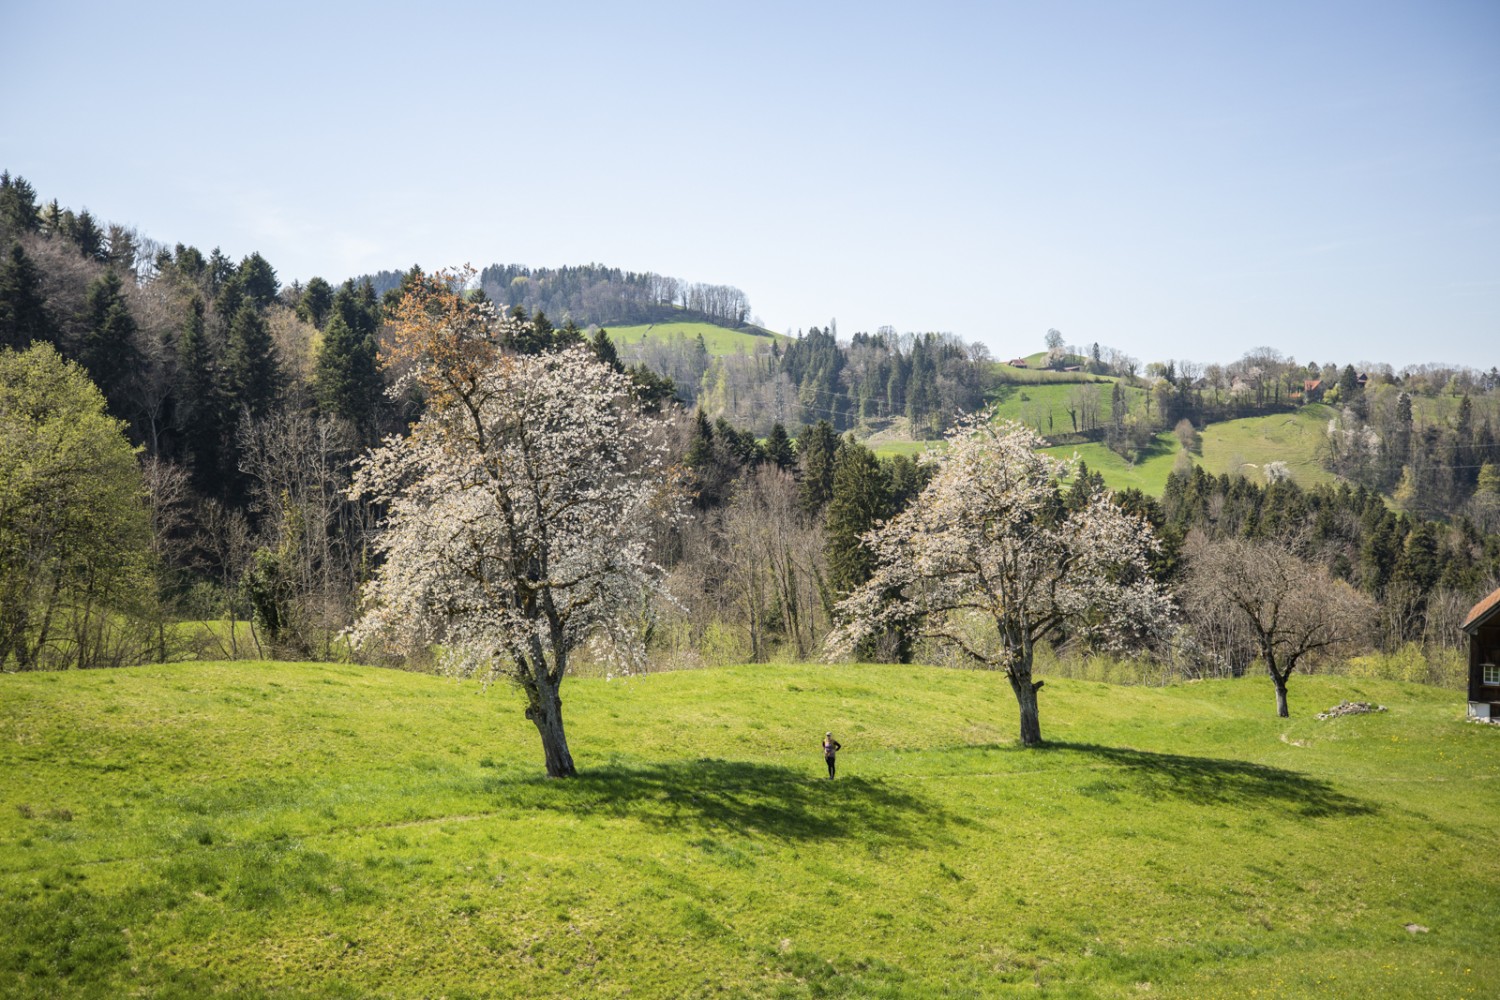 Pâturages verdoyants et arbres fruitiers en fleurs: le printemps est une saison merveilleuse. Photo: Wanderblondies